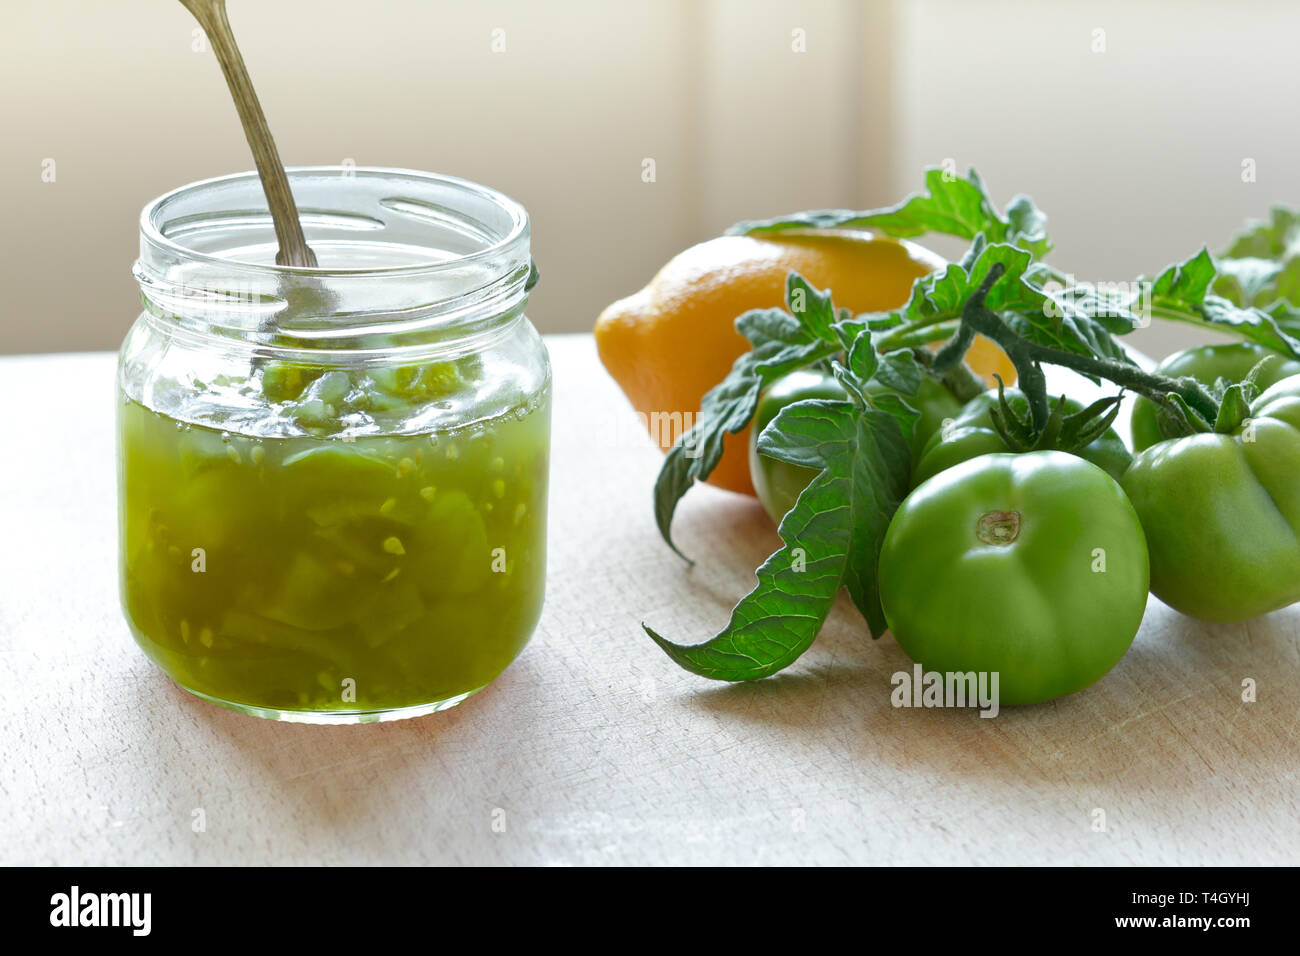 Grüne Tomaten Marmelade oder chutney in einem Glas mit Zitrone Aroma ...